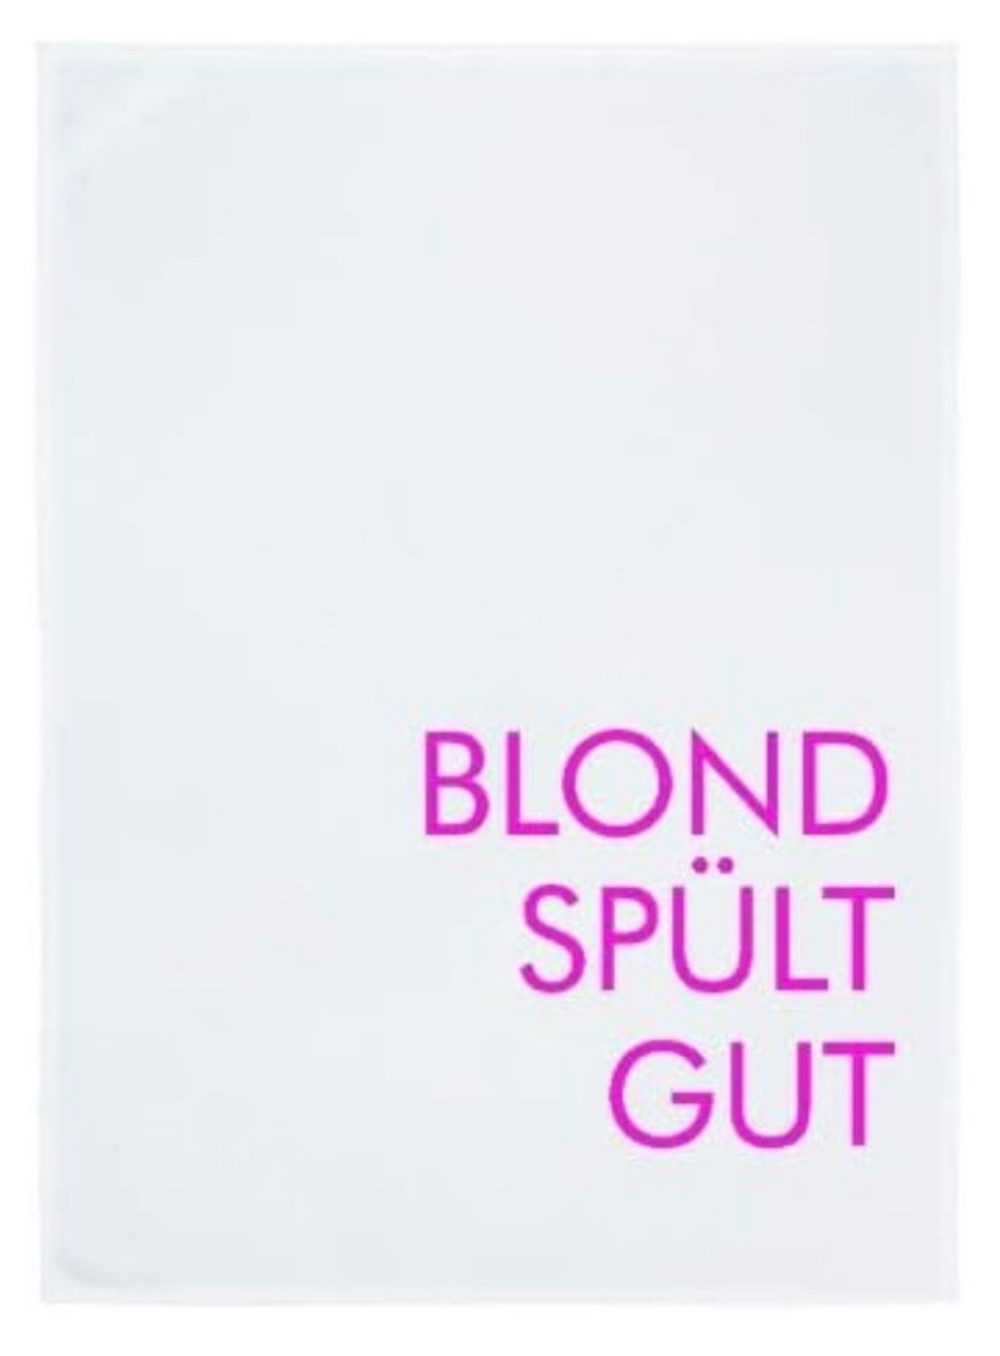 17;30 Hamburg Geschirrtuch Geschirrtuch weiß BLOND SPÜLT GUT neon pink 70x50cm 100% Baumwolle, aus 100% Baumwolle